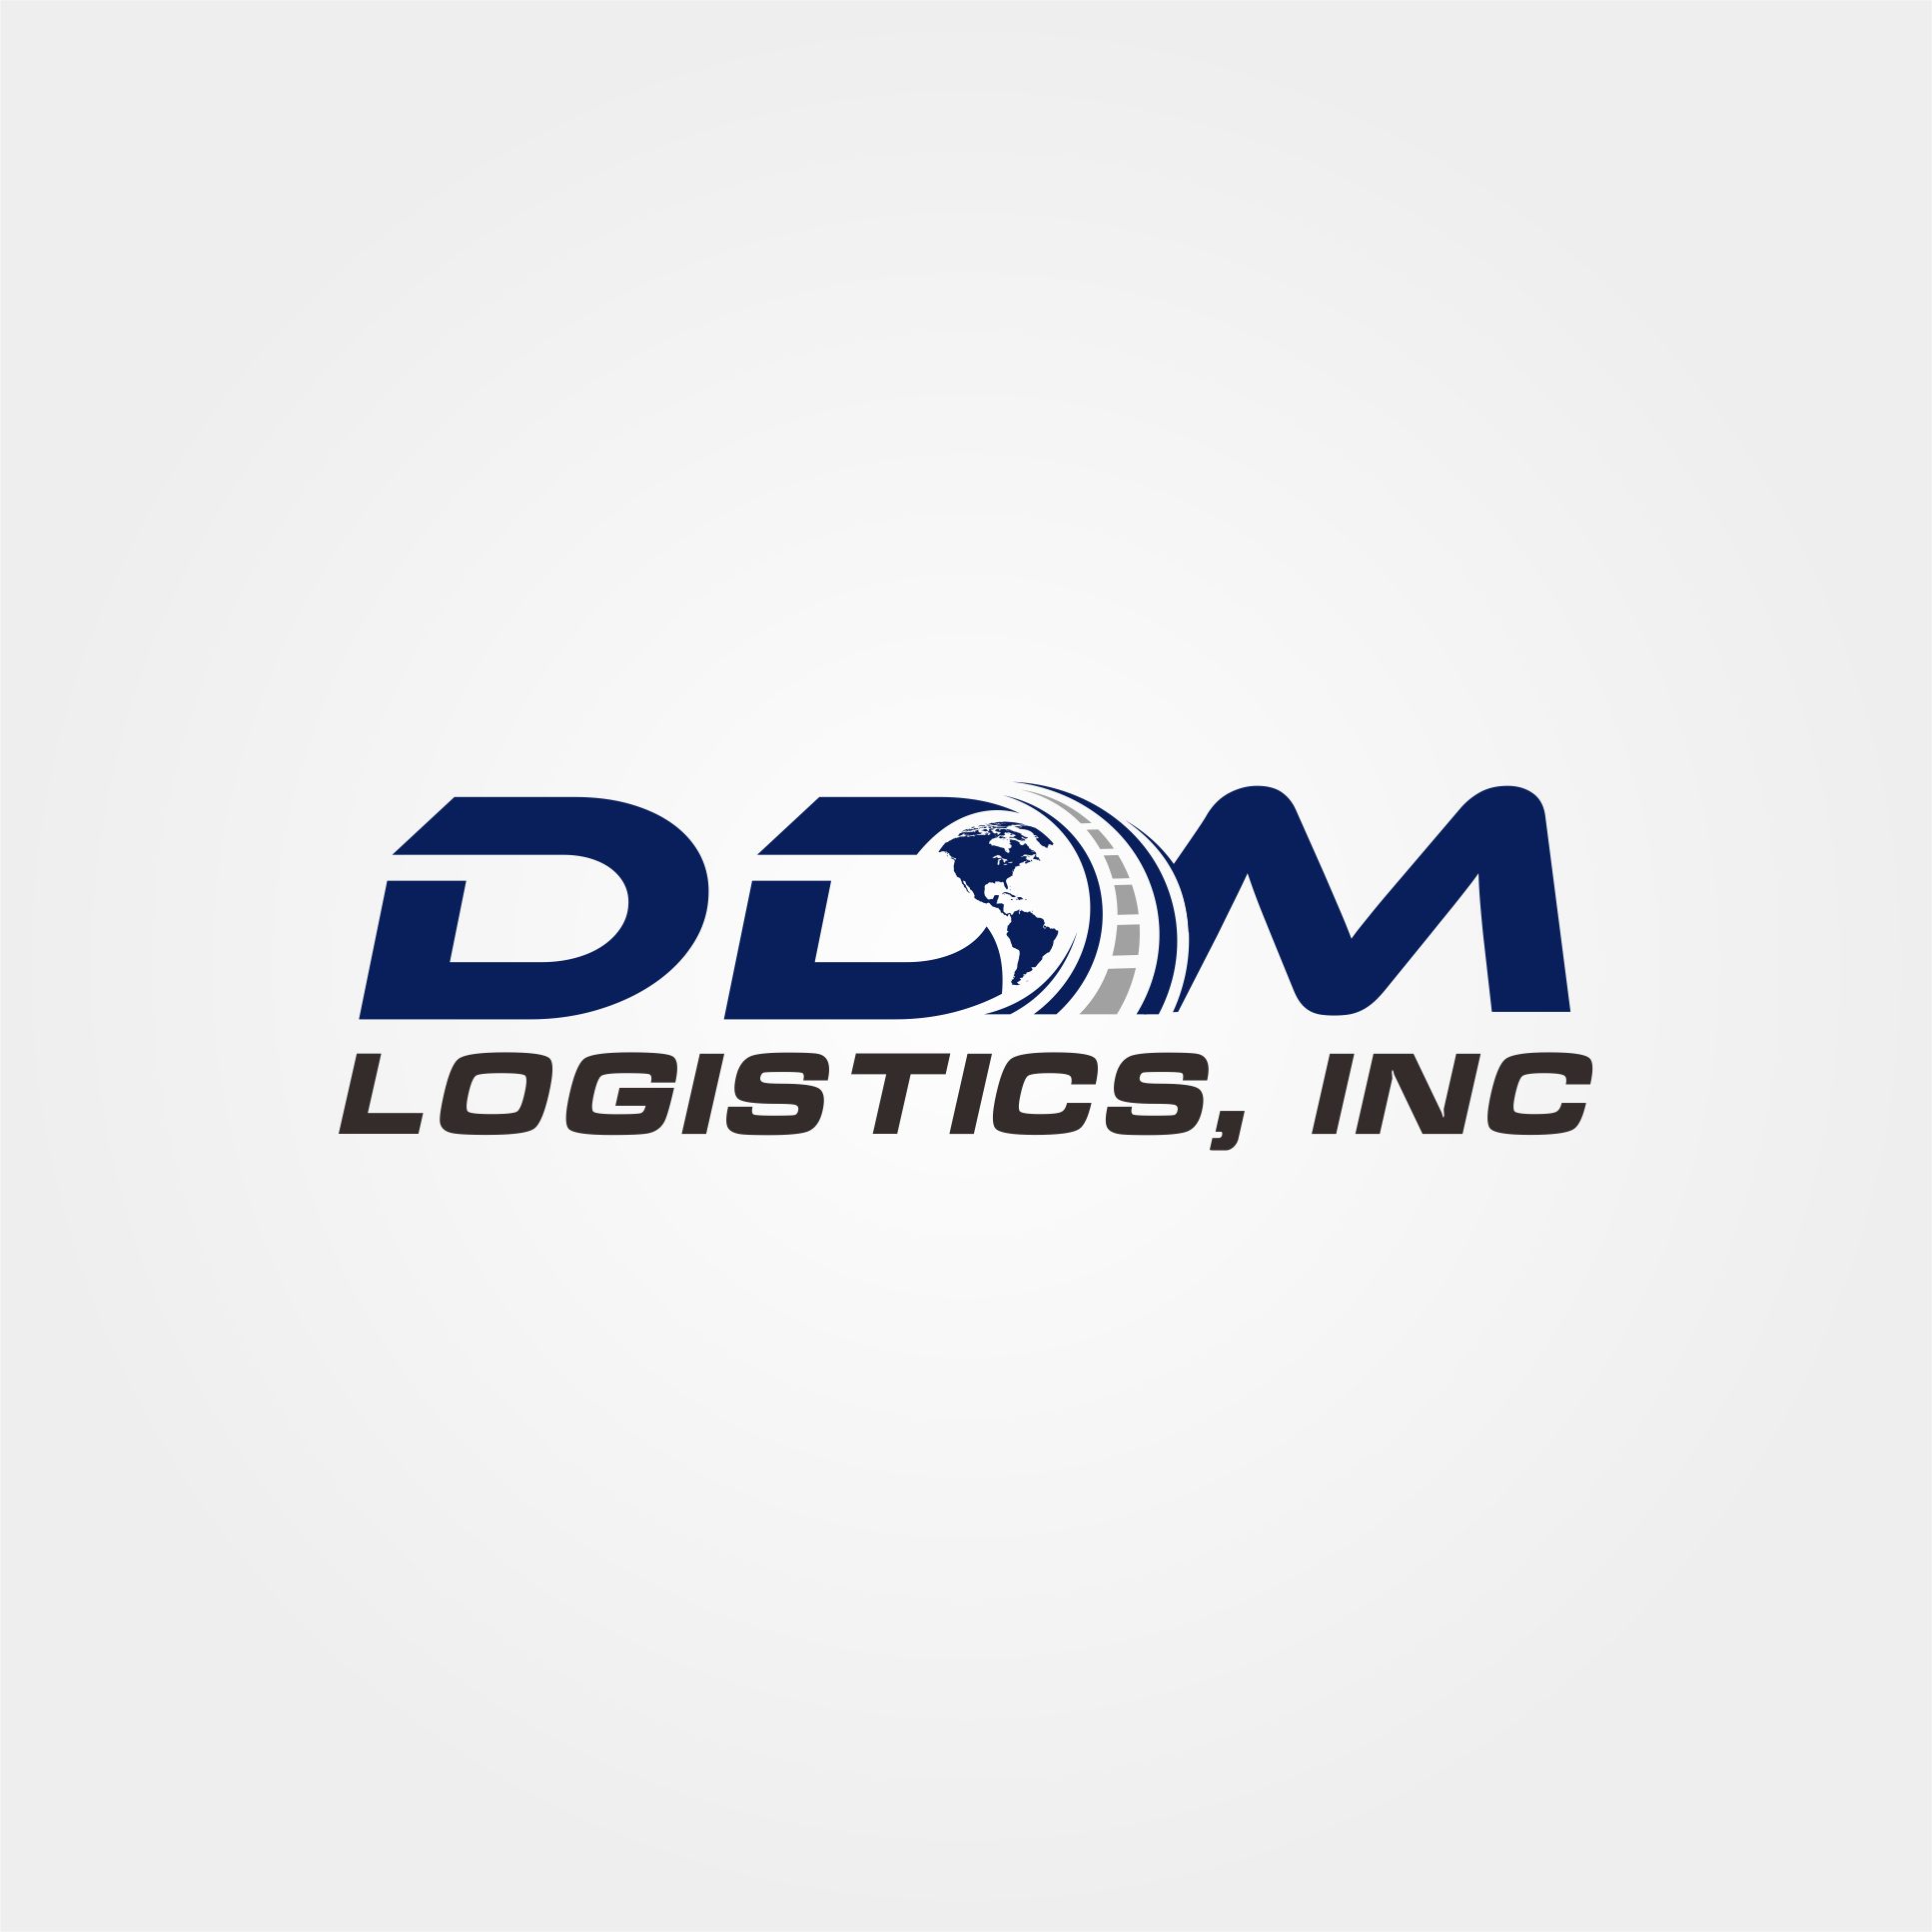 DDM Logistics, Inc. 6800 Santa Fe Dr suite a, Hodgkins Illinois 60525